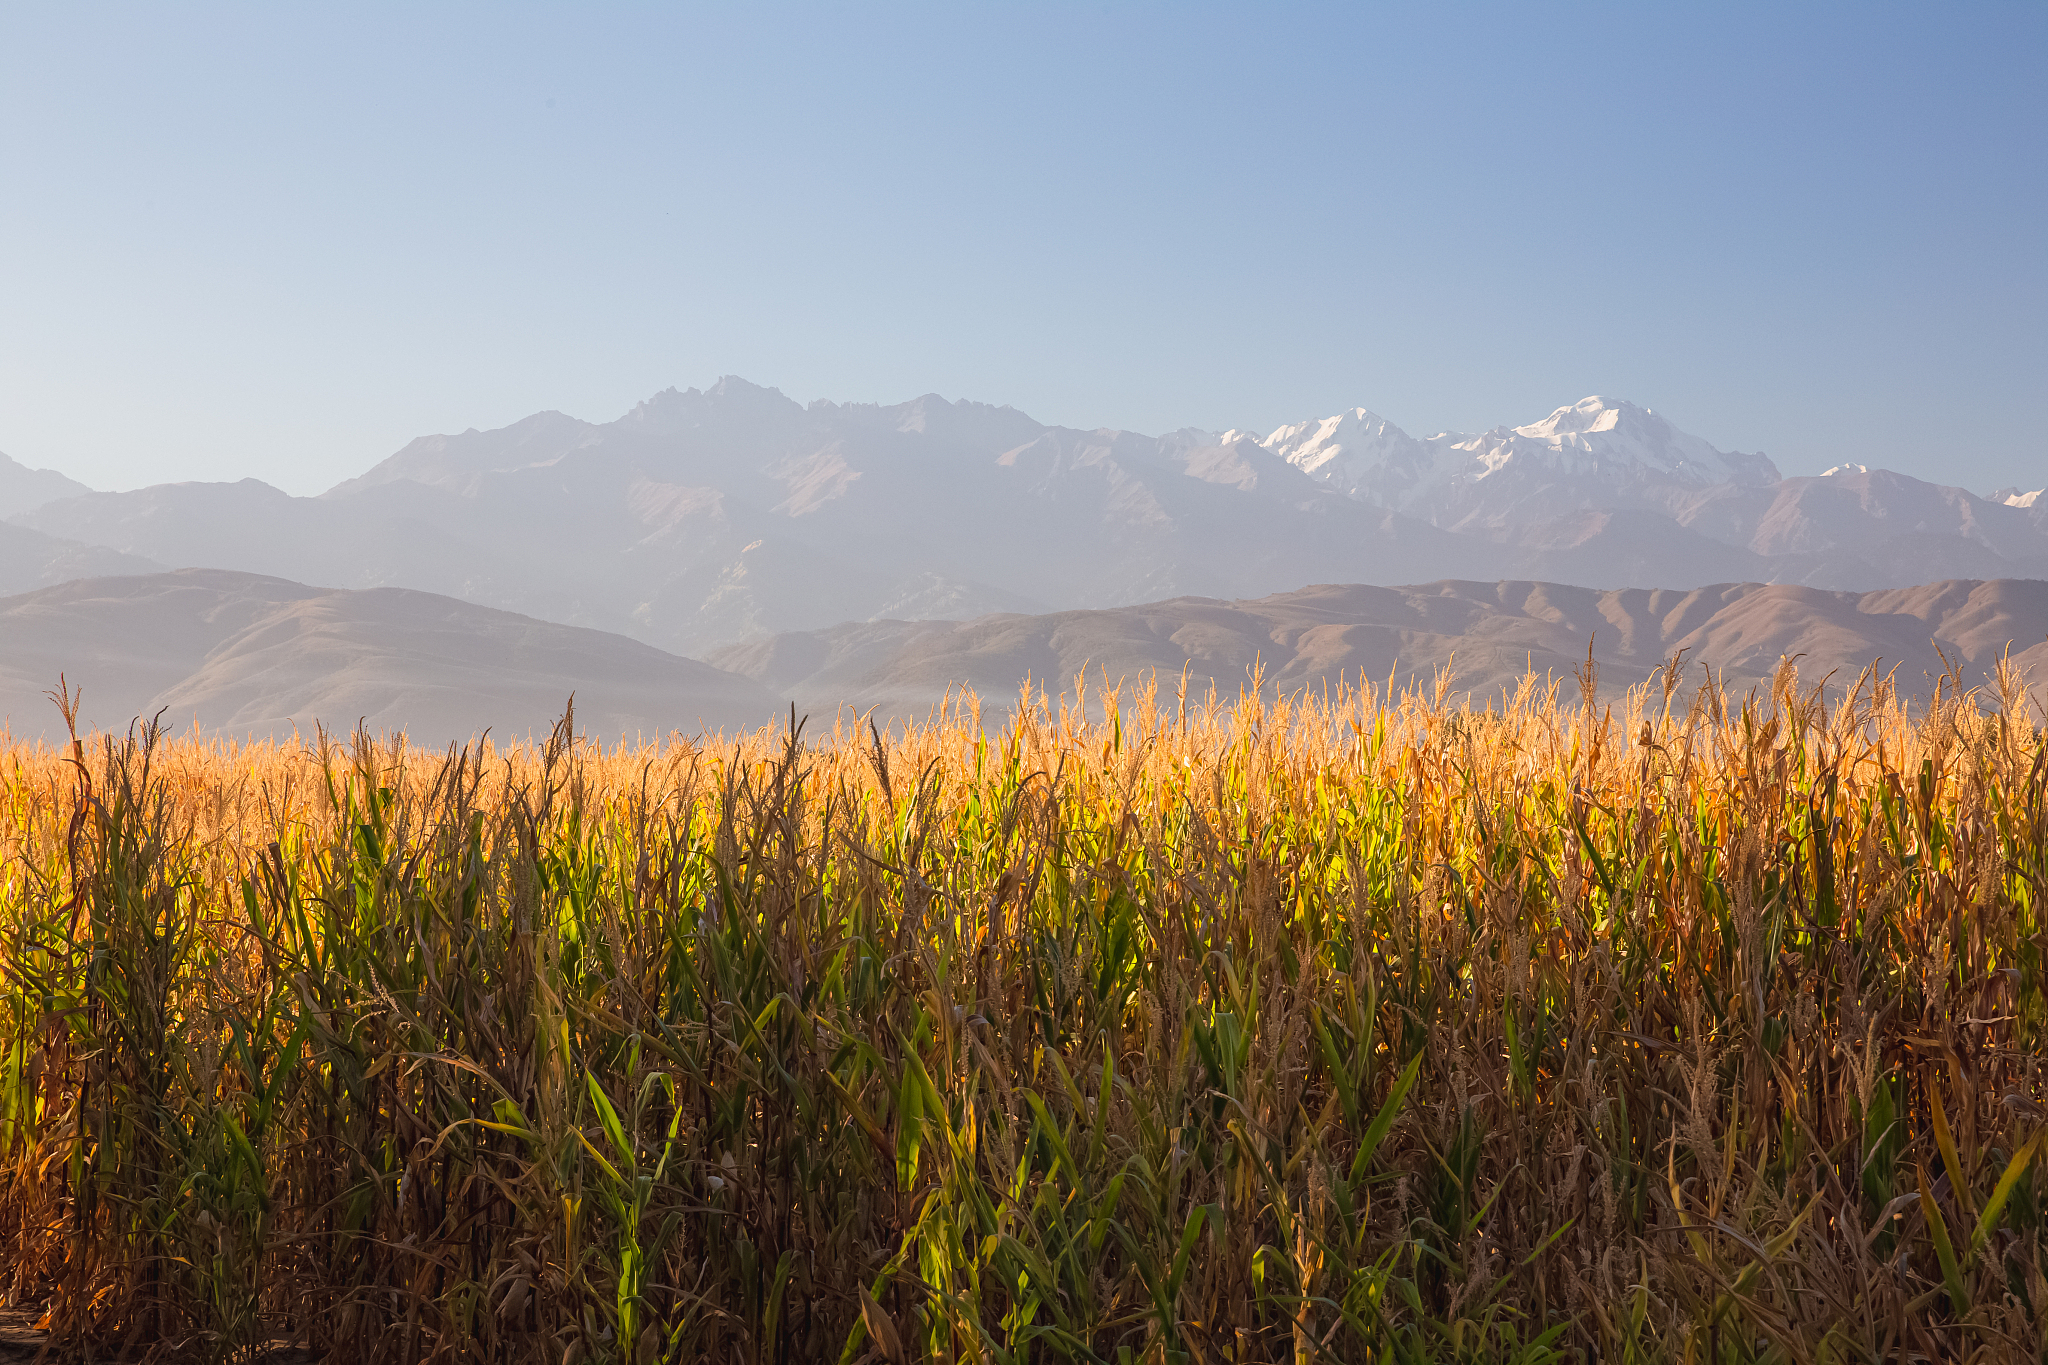 Wheat field in Kazakhstan. /CFP